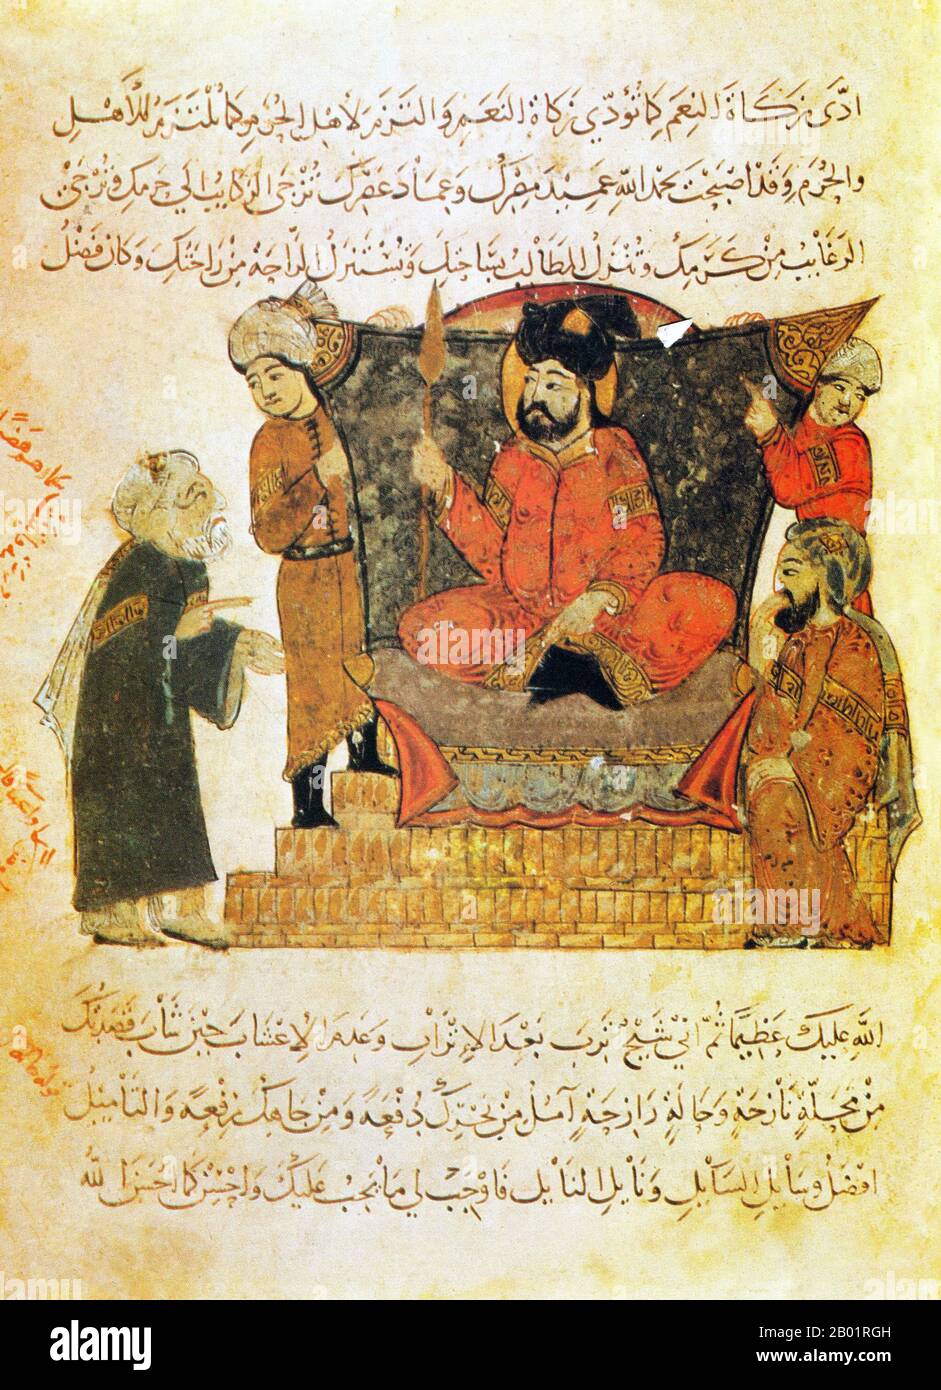 Iraq: Discussione con un sovrano. Pittura in miniatura di Yahya ibn Mahmud al-Wasiti, 1237 d.C. Yahyâ ibn Mahmûd al-Wâsitî è stato un artista arabo islamico del XIII secolo. Al-Wasiti è nato a Wasit, nel sud dell'Iraq. Era noto per le sue illustrazioni del Maqam di al-Hariri. I Maqāma (letteralmente "assemblee") sono un genere letterario arabo (originariamente) di prosa rimata con intervalli di poesia in cui la stravaganza retorica è evidente. Si dice che l'autore del X secolo Badī' al-Zaman al-Hamadhāni abbia inventato la forma, che fu estesa da al-Hariri di Bassora nel secolo successivo. Foto Stock